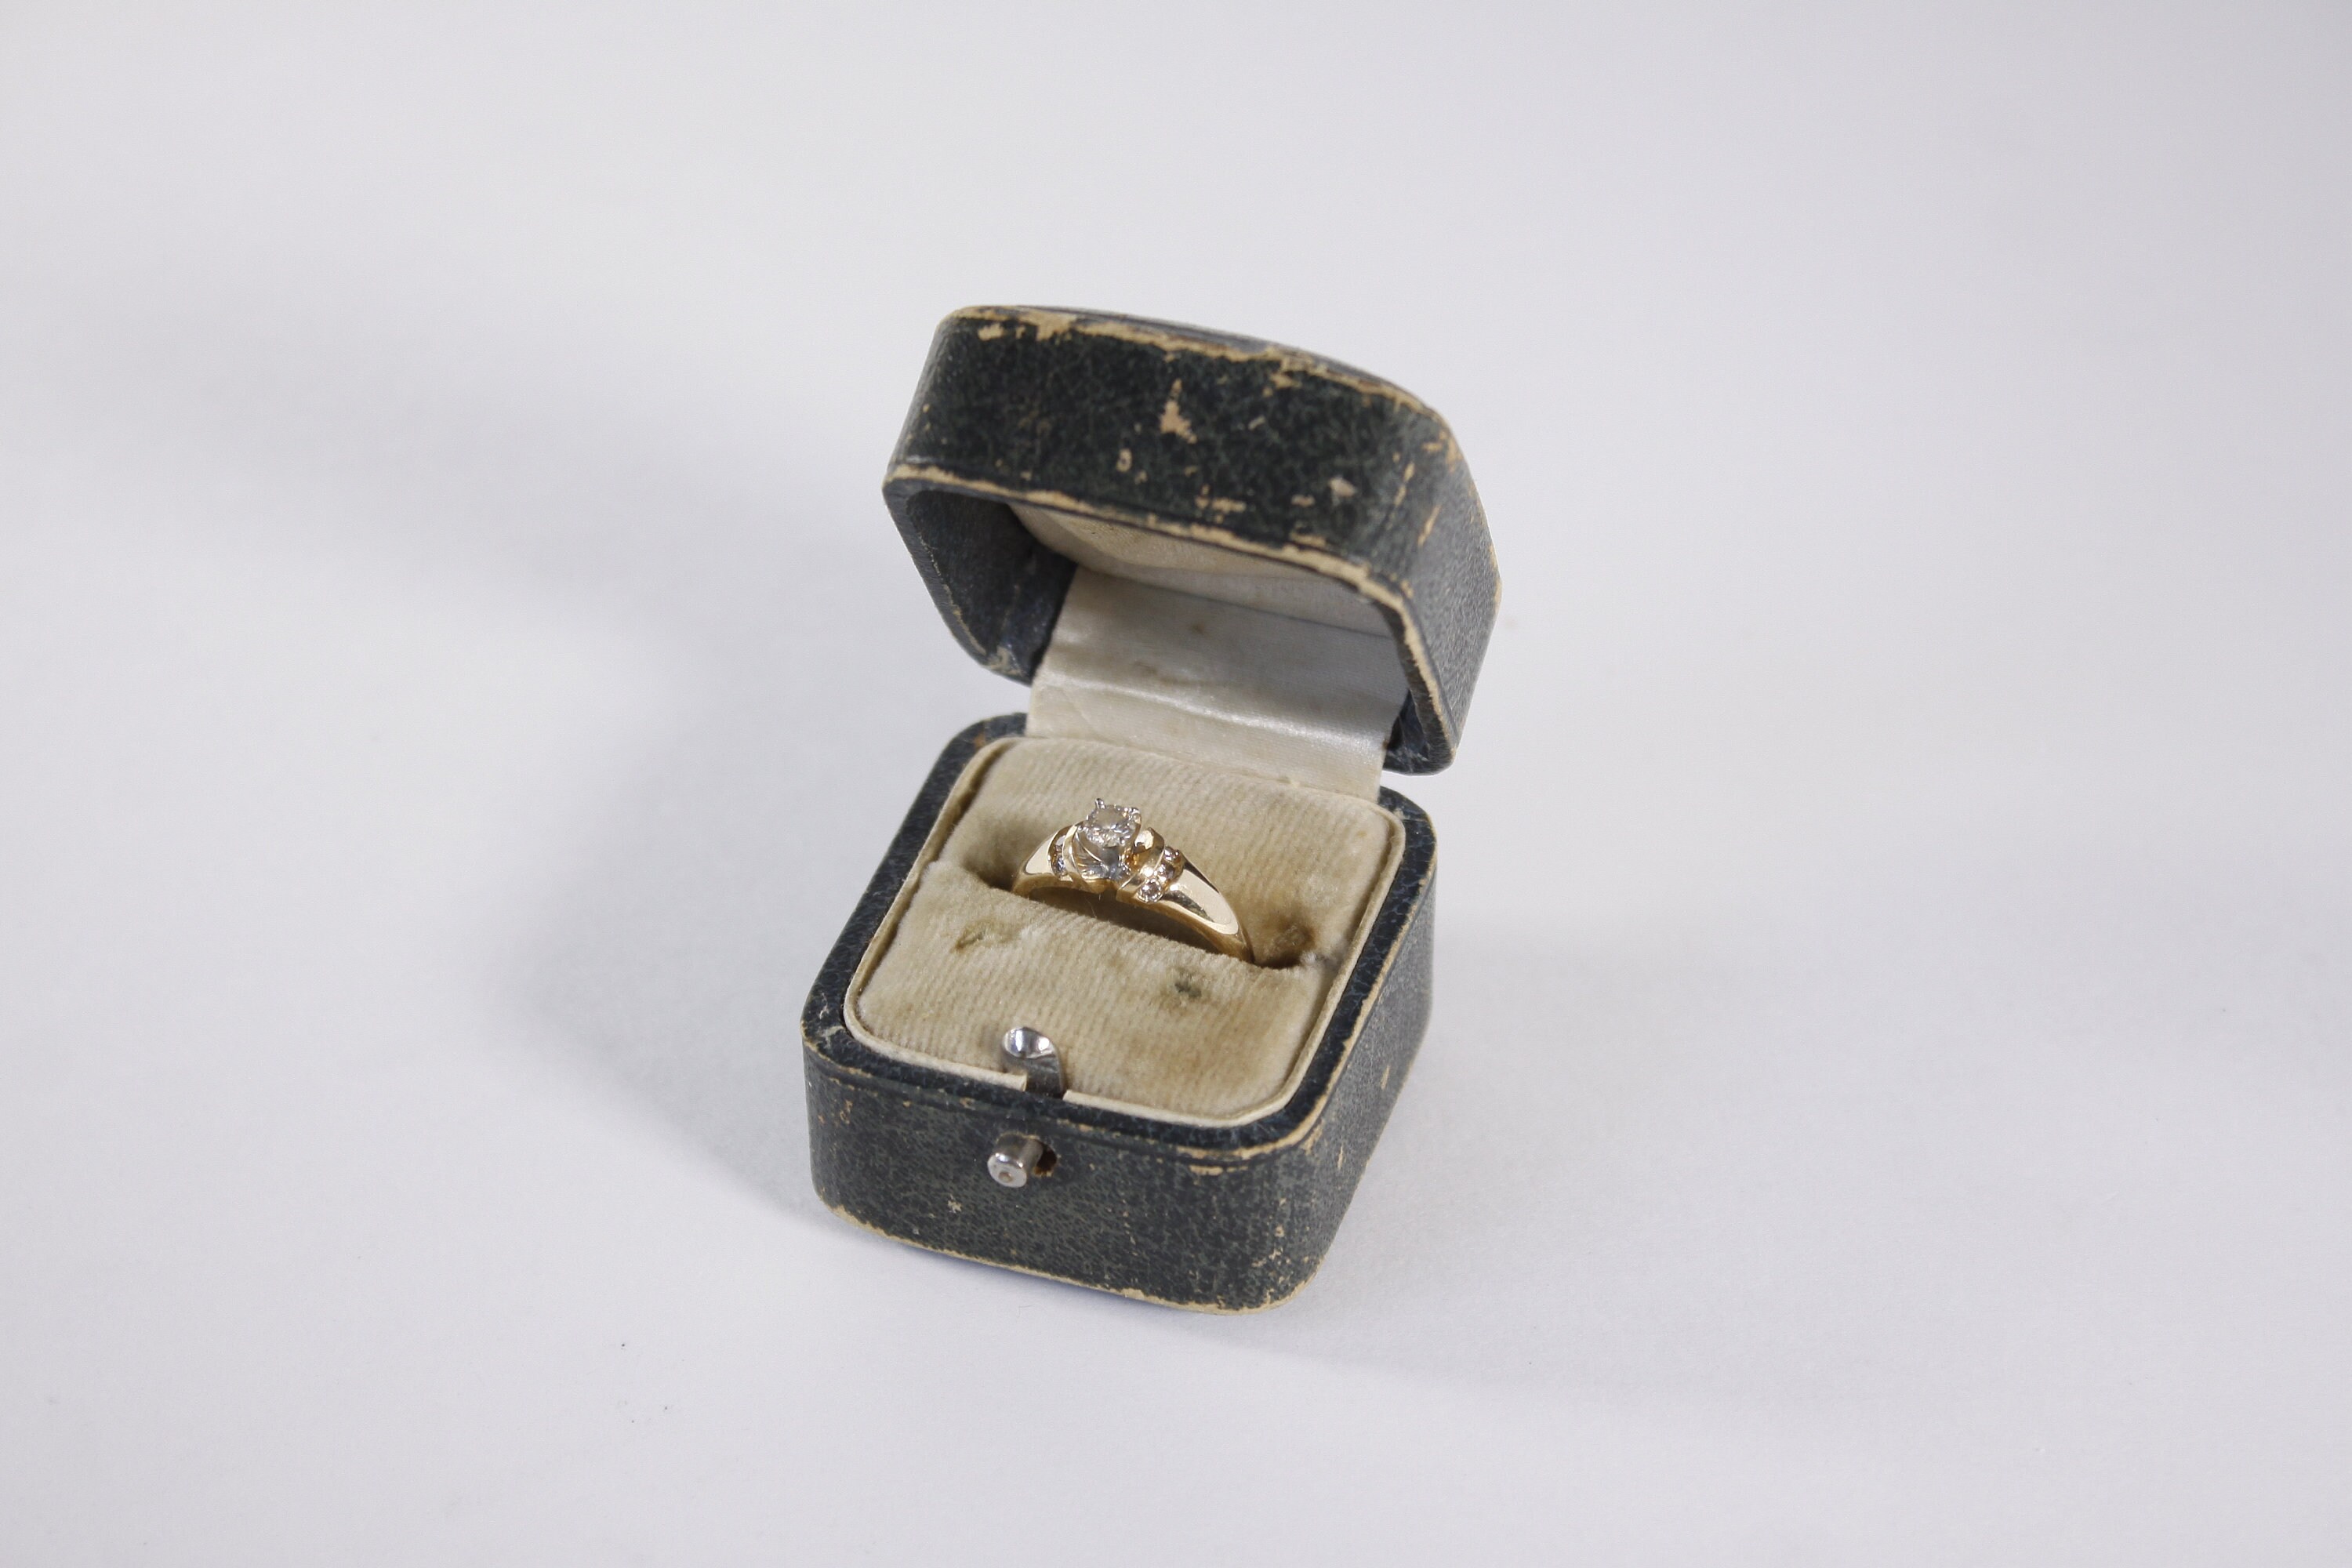 Caja de anillo de boda Caja de joyería Empaquetado Caja de regalo